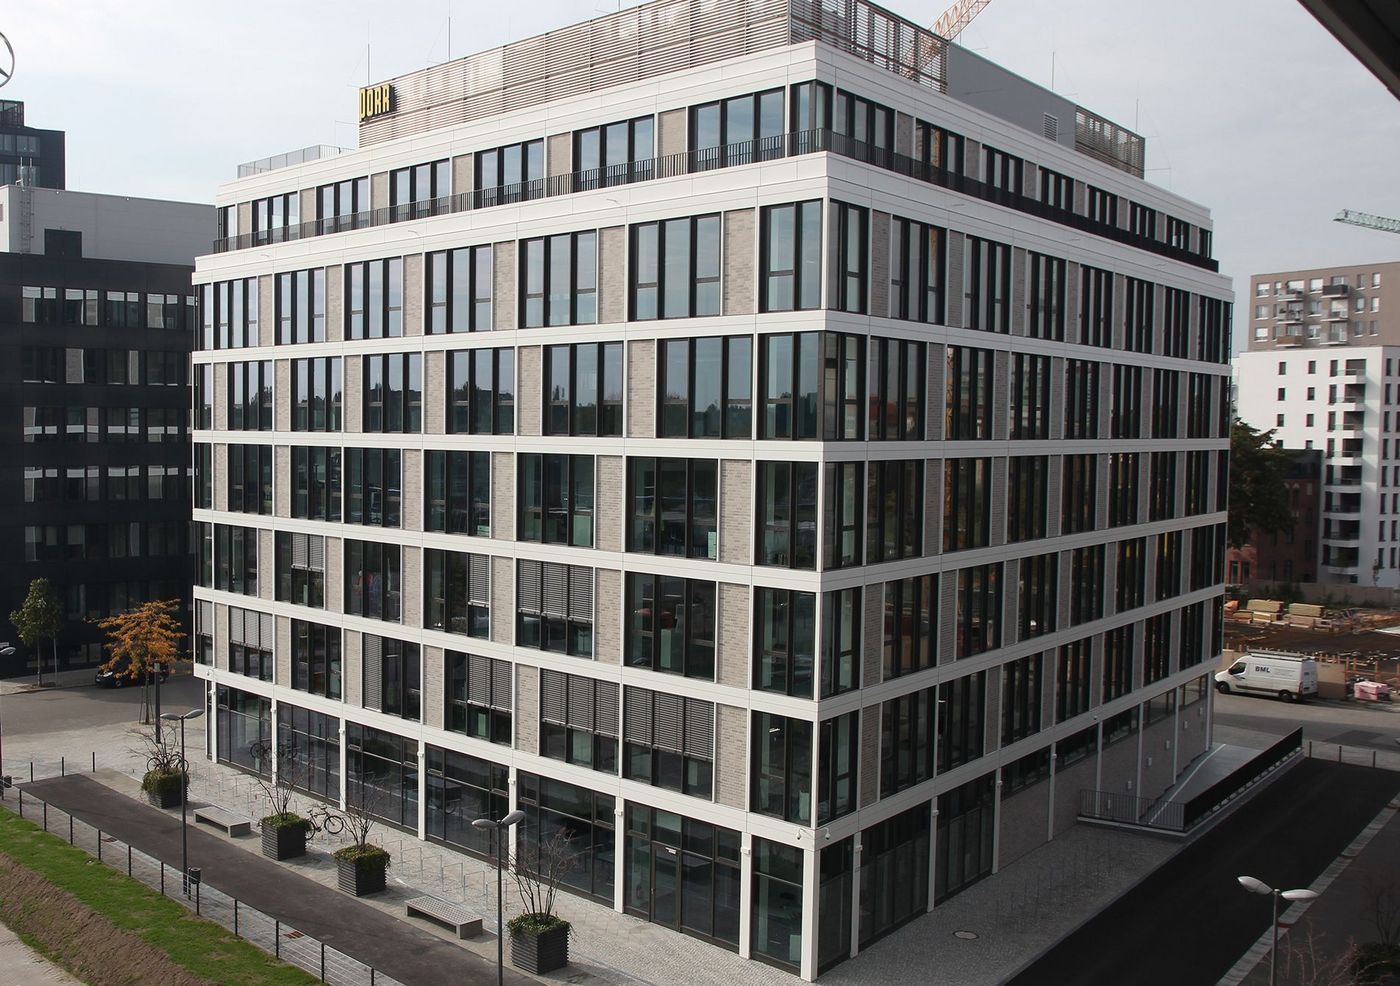 Foto: Sechsstöckiges Bürogebäude mit quadratischem Grundriss und offener Glasfassade, die den Himmel über Berlin spiegelt.